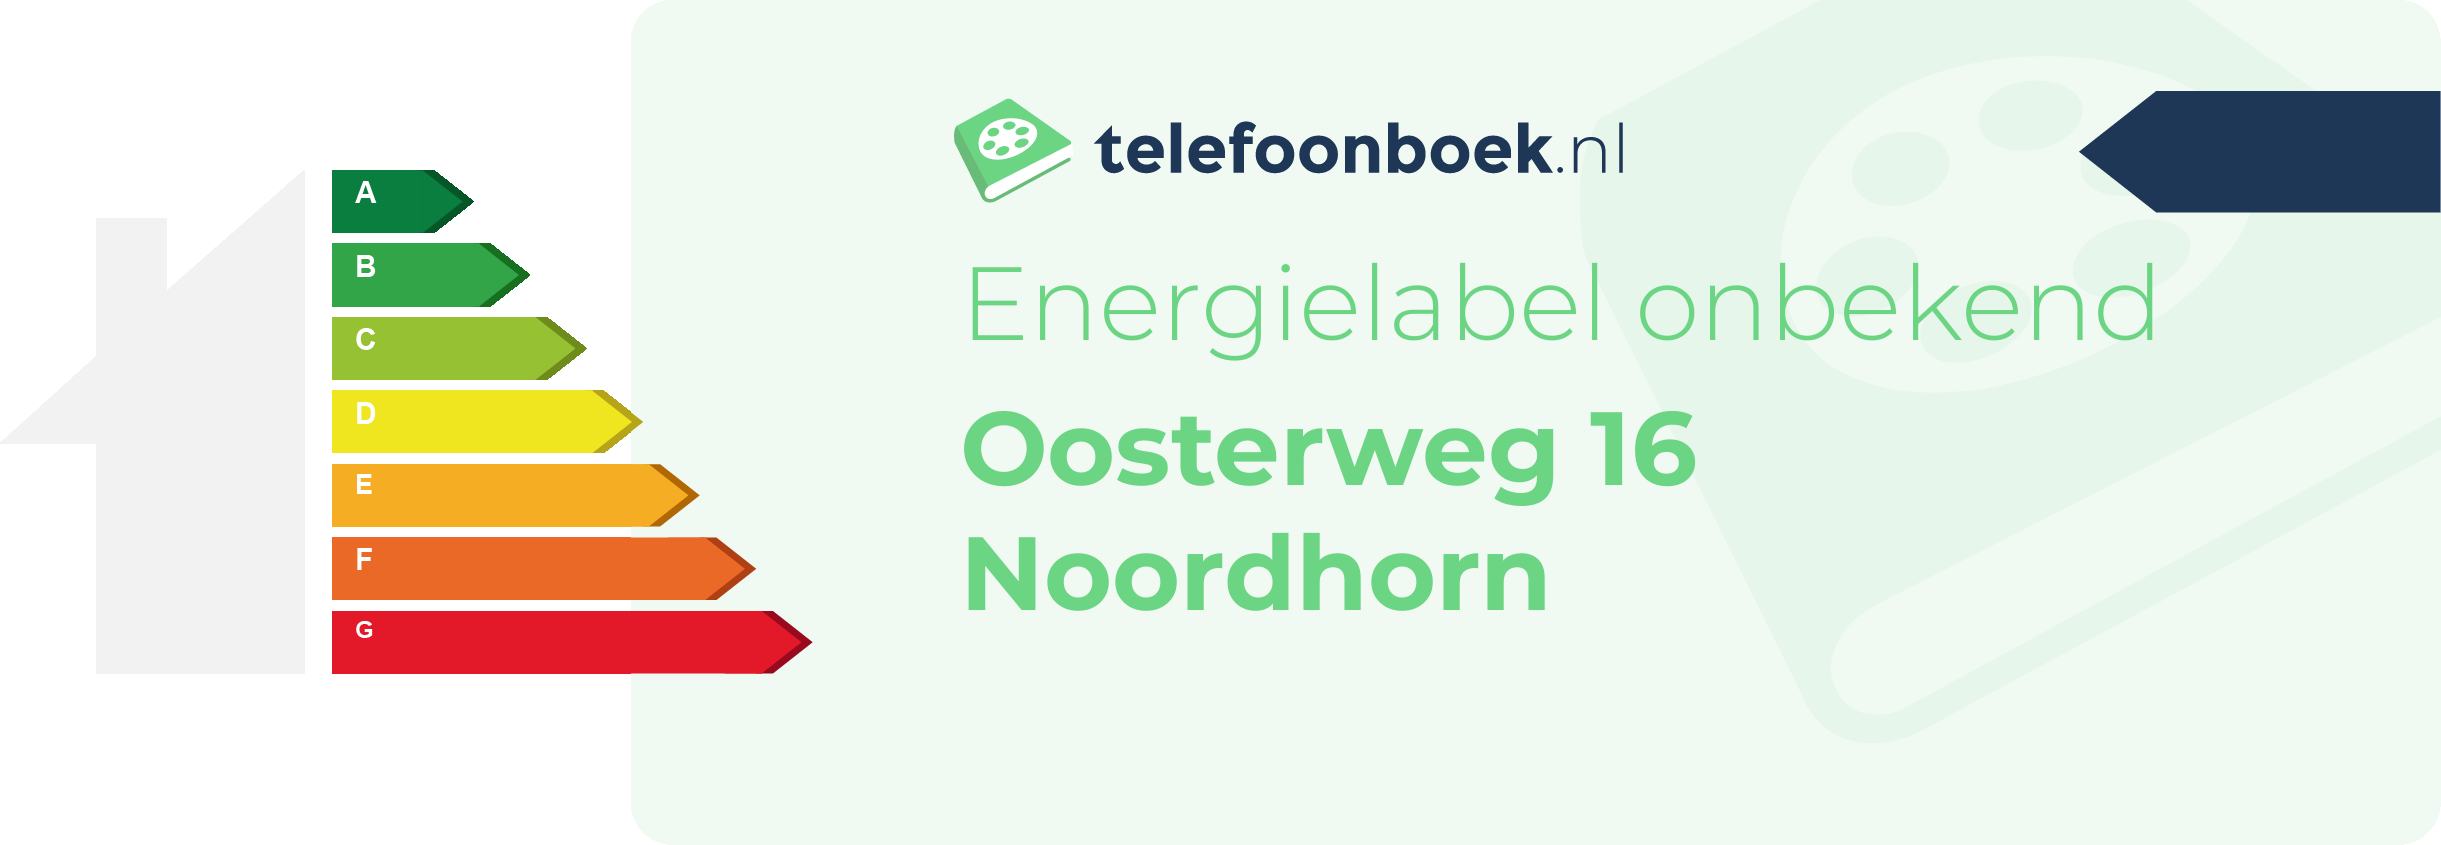 Energielabel Oosterweg 16 Noordhorn